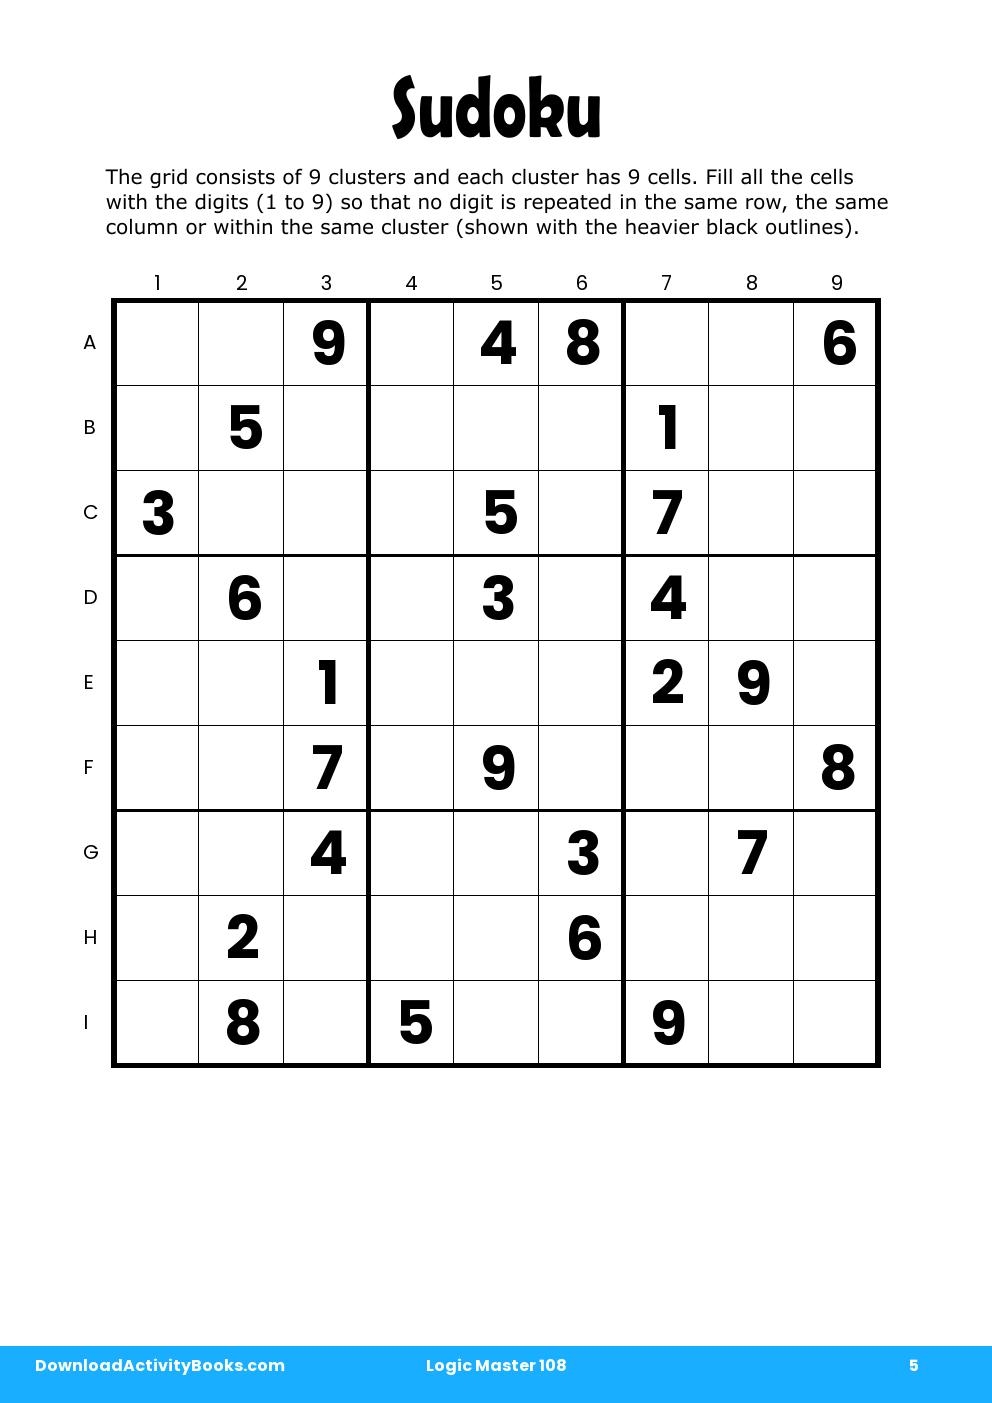 Sudoku in Logic Master 108